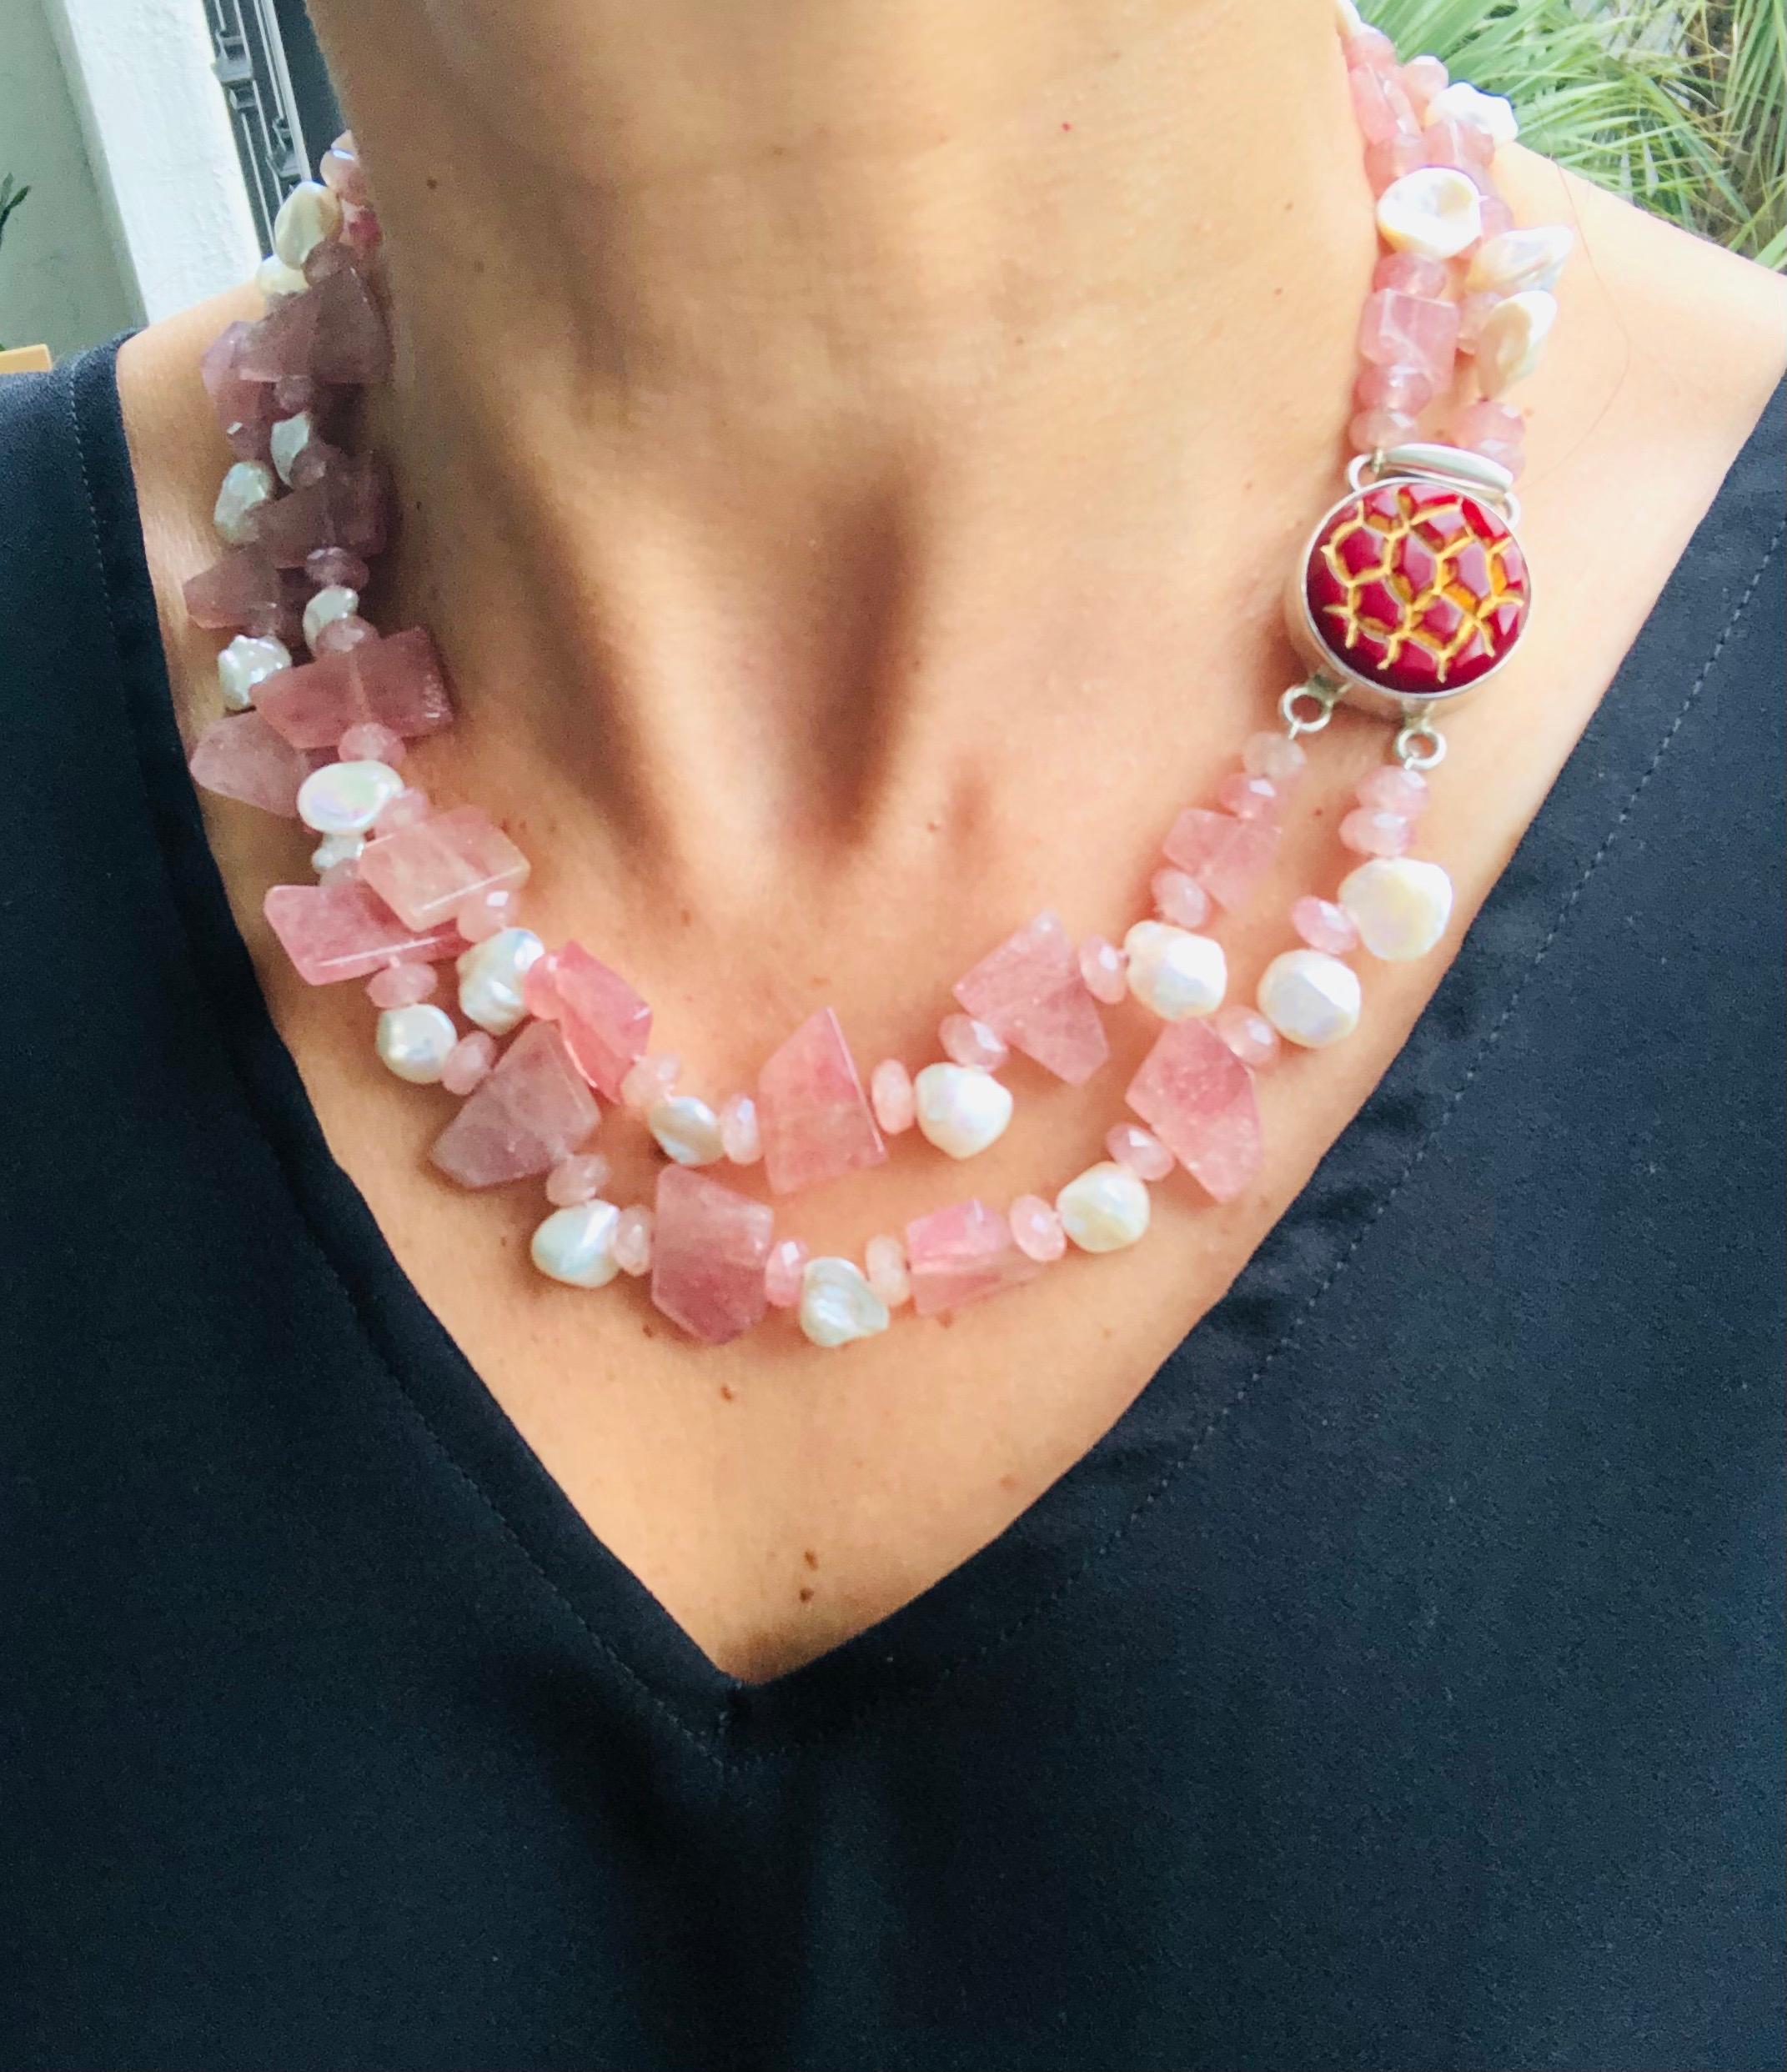 Ziehen Sie die Blicke auf sich mit dieser exquisiten Rhodochrosit-Halskette, einem einzigartigen Meisterwerk. Der zarte, aus zwei Strängen gefertigte Schmuck mit dem faszinierenden, halbtransparenten Farbton Rosa strahlt Eleganz und Einzigartigkeit